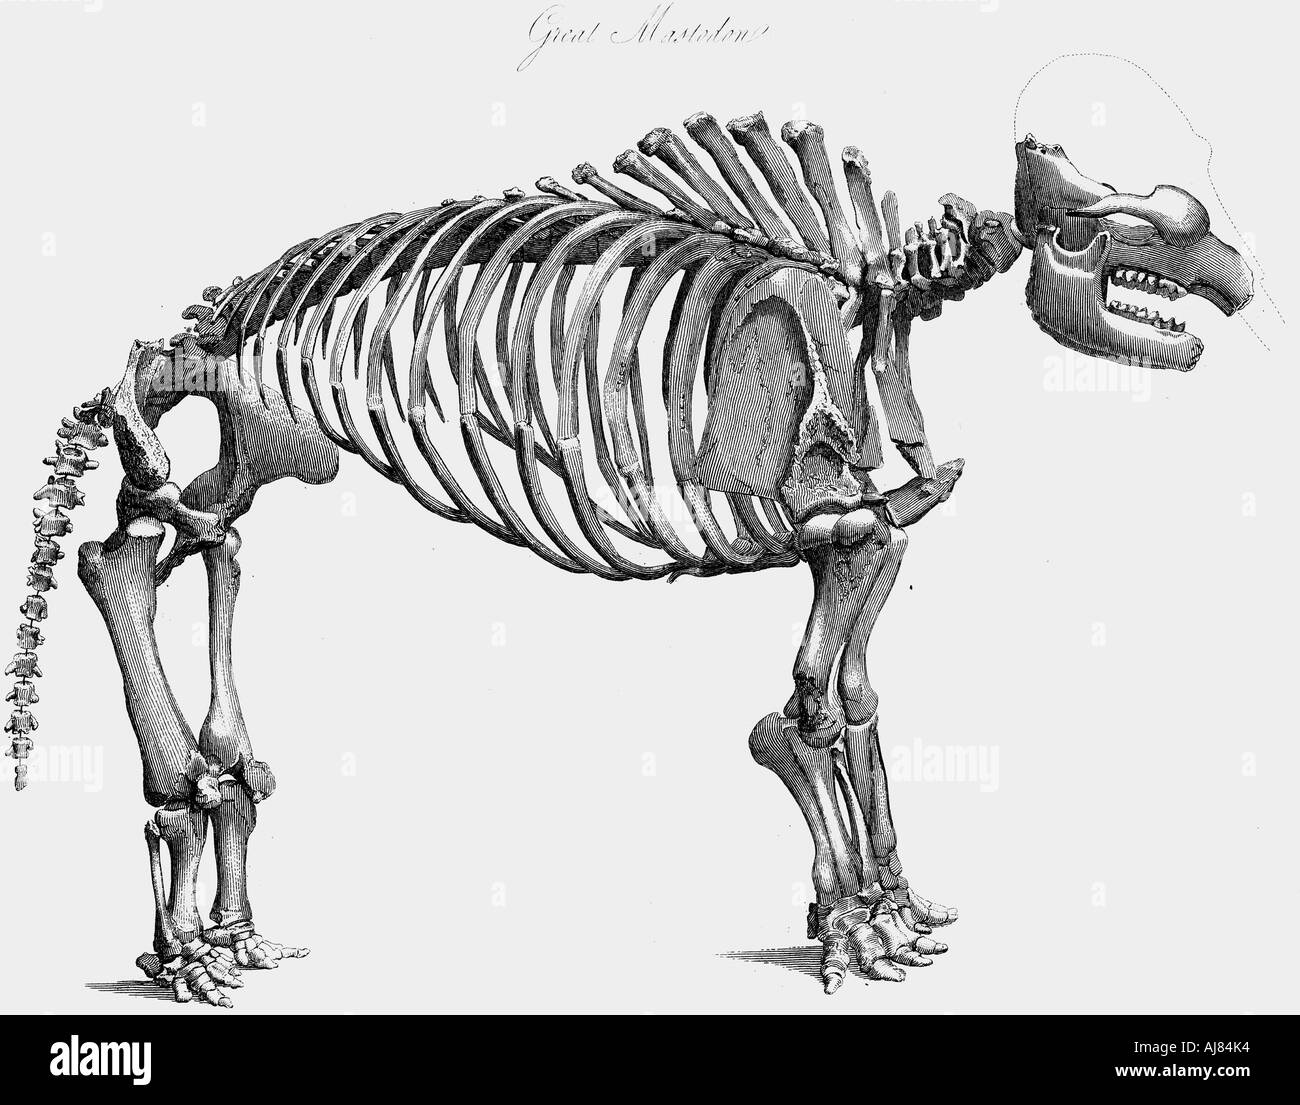 Giant mastodon skeleton, 1830. Artist: Unknown Stock Photo